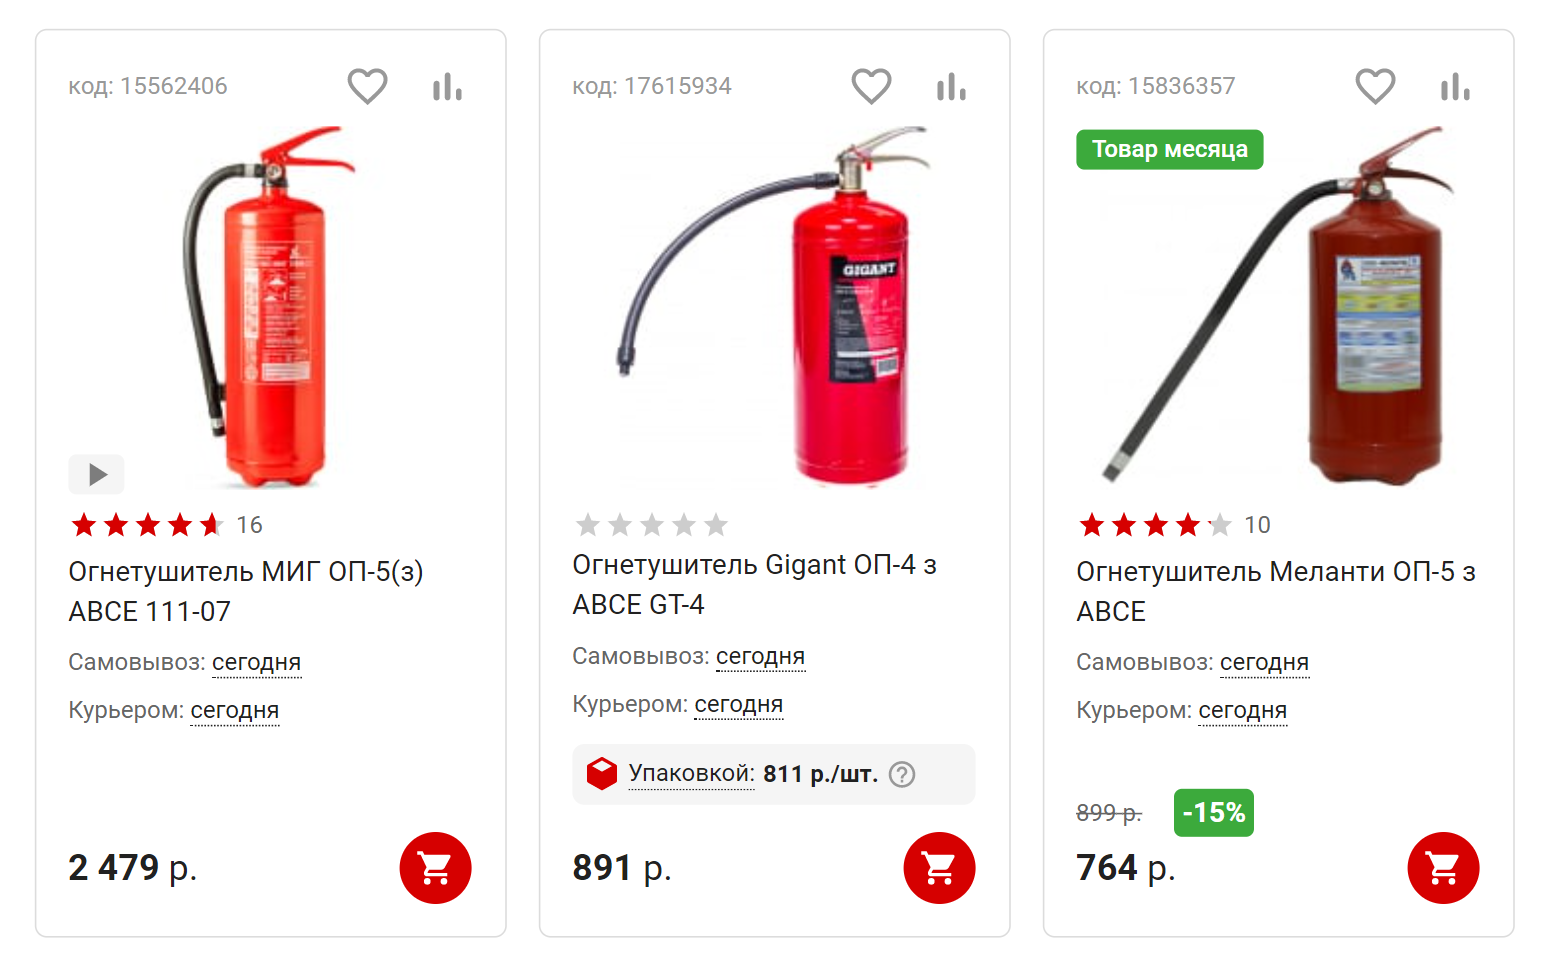 Цены на порошковые огнетушители. Источник: vseinstrumenti.ru